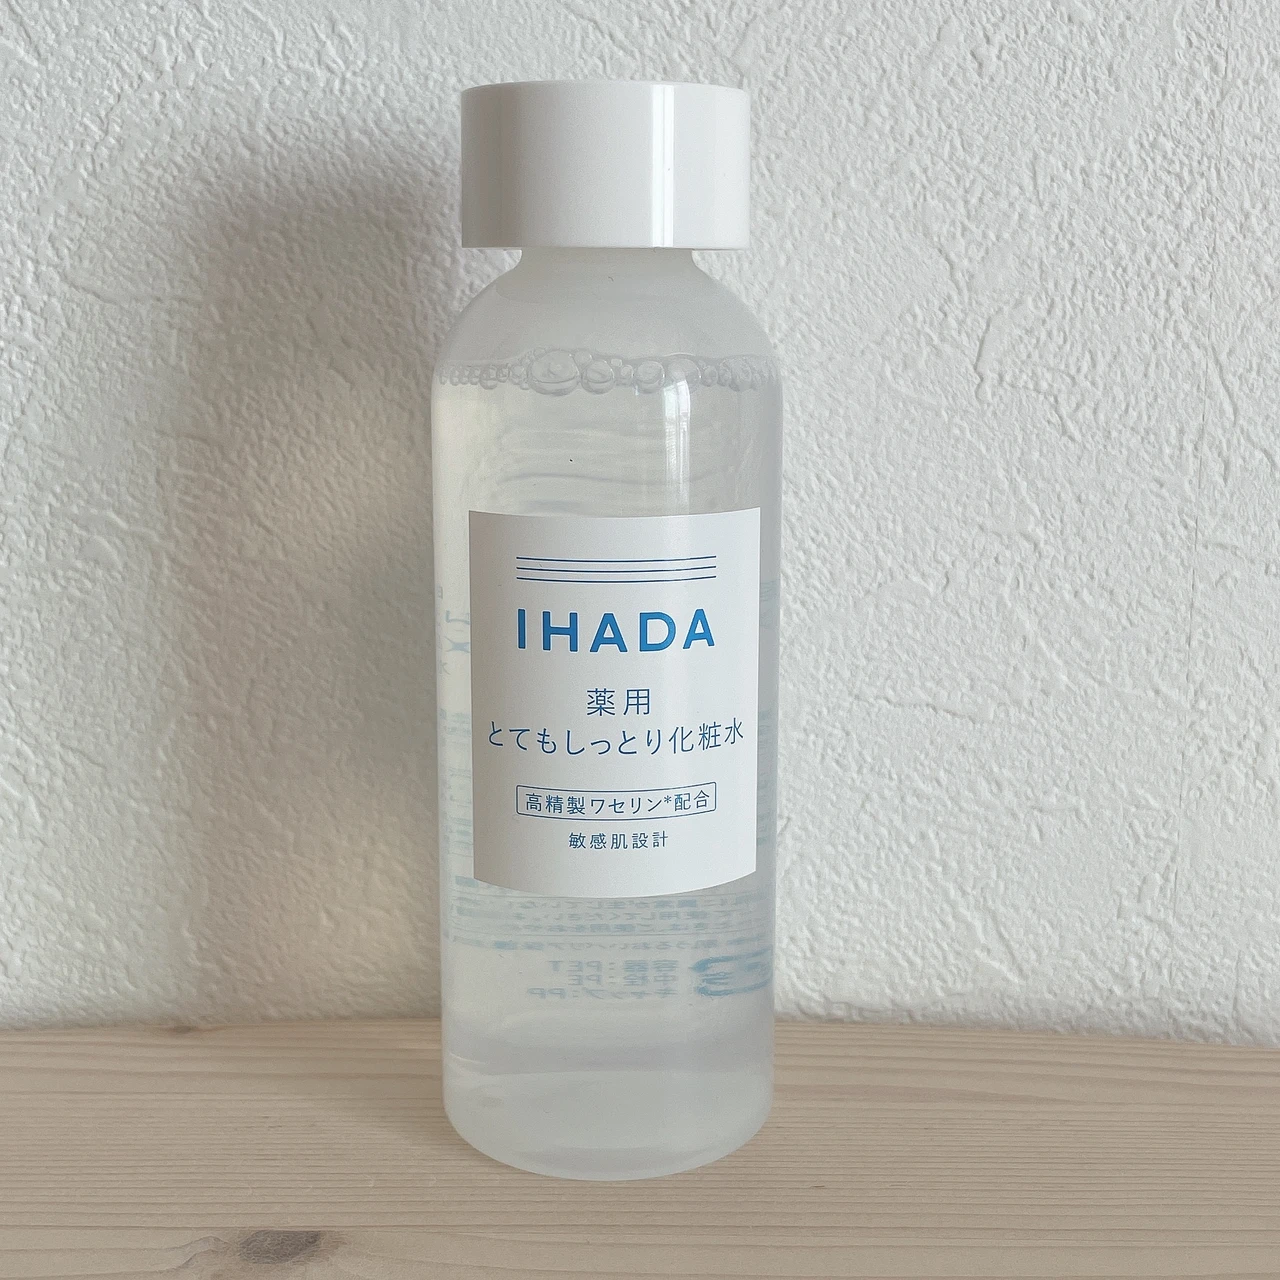 【ゆらぎケアに】IHADA(イハダ)の高精製ワセリン配合スキンケアで季節の変わり目の肌荒れ対策！効果的な使い方もご紹介します♡_3_1